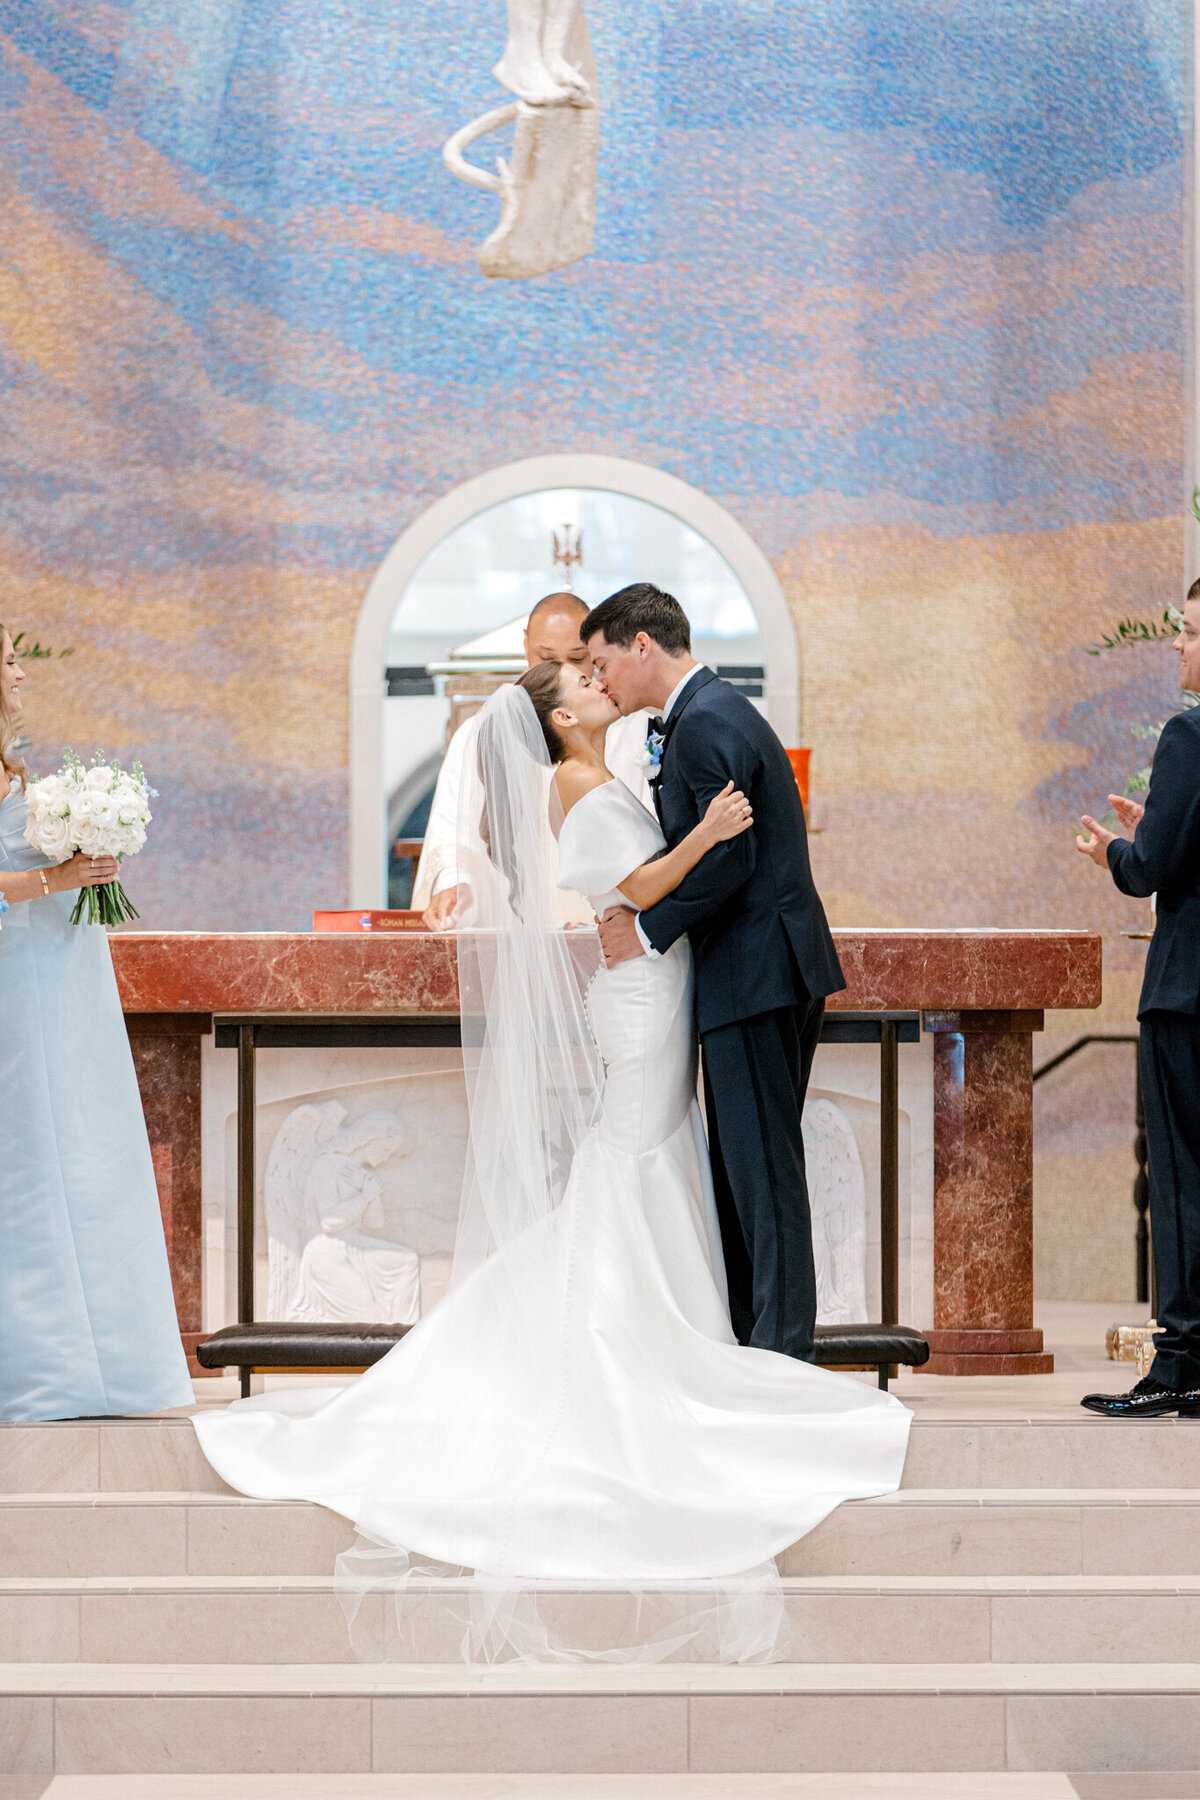 Annie & Logan's Wedding | Dallas Wedding Photographer | Sami Kathryn Photography-104